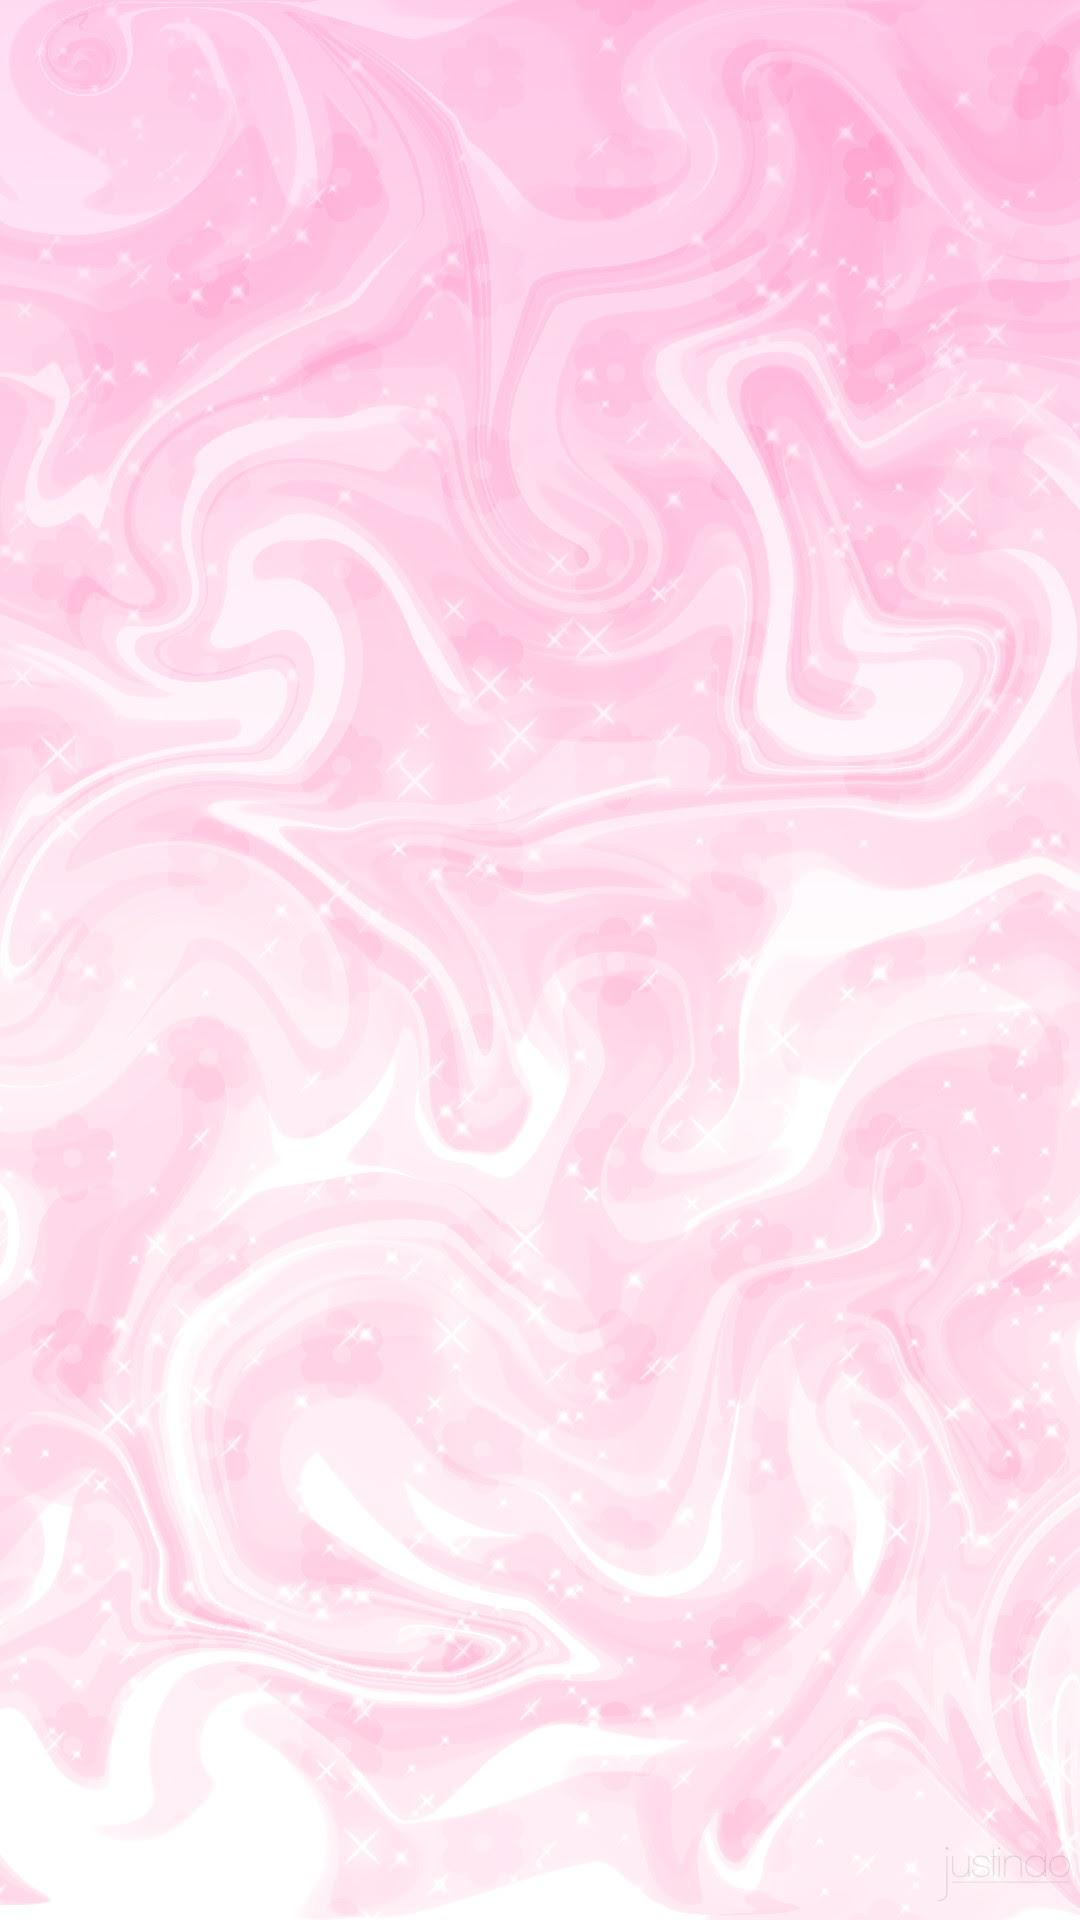 1080 x 1920 · jpeg - Cute Aesthetic Pink Phone Wallpaper | Brengsek Wall